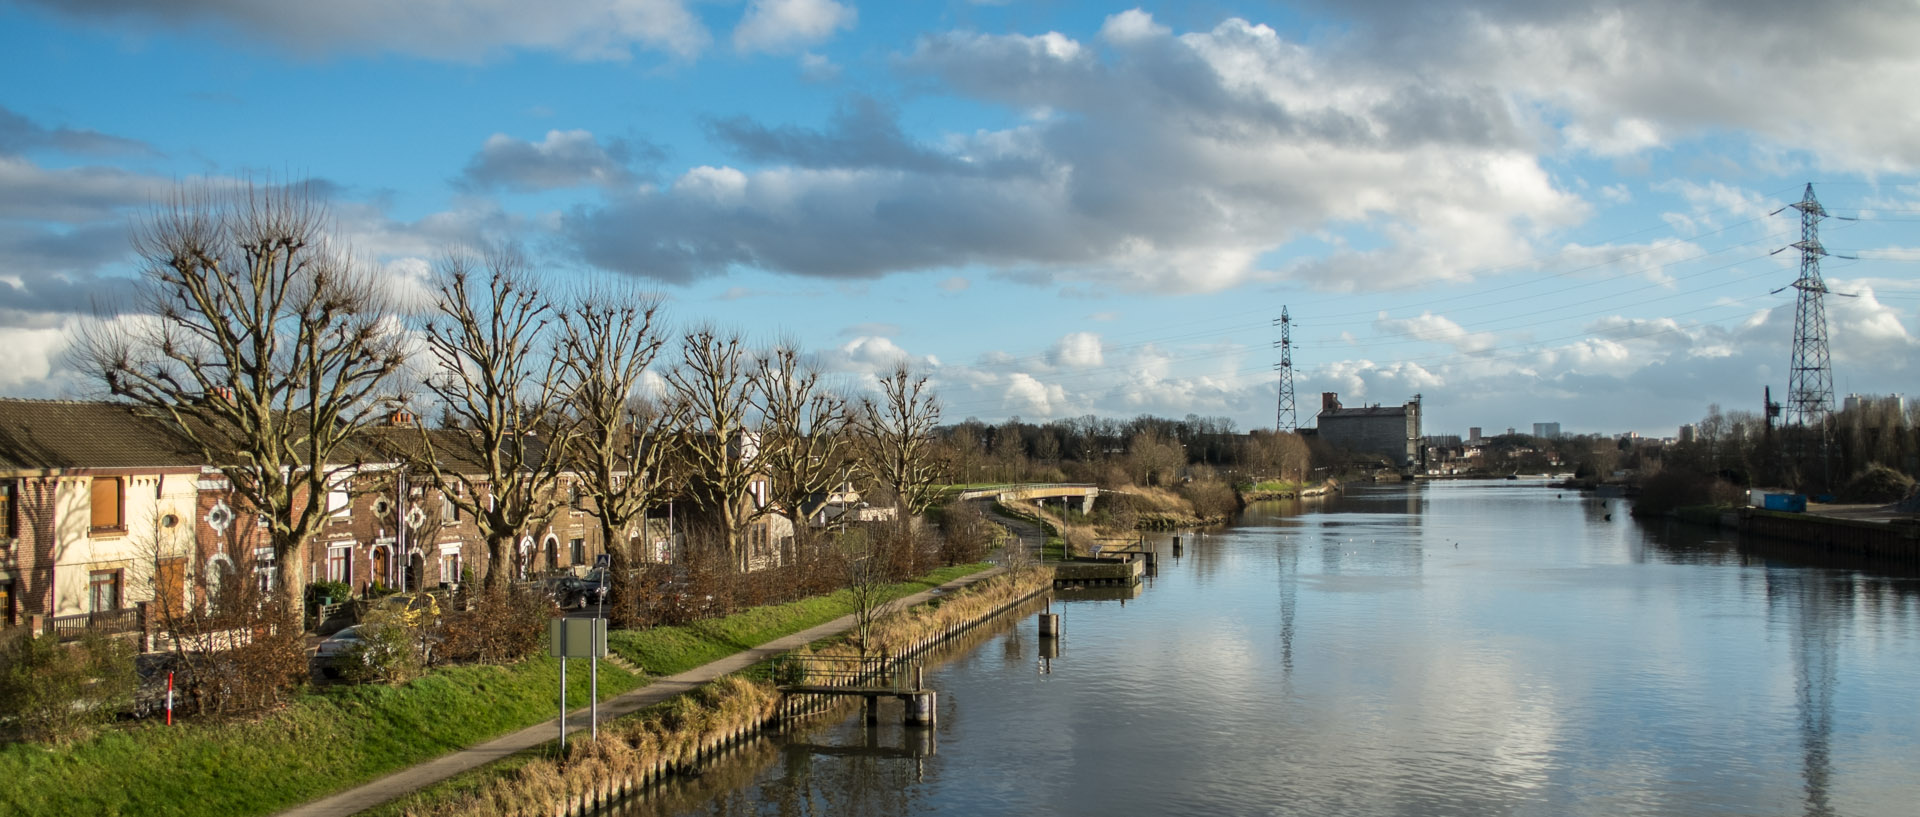 Vendredi 7 février 2014, 16:28, pont Pasteur sur la Deûle, Marquette lez Lille